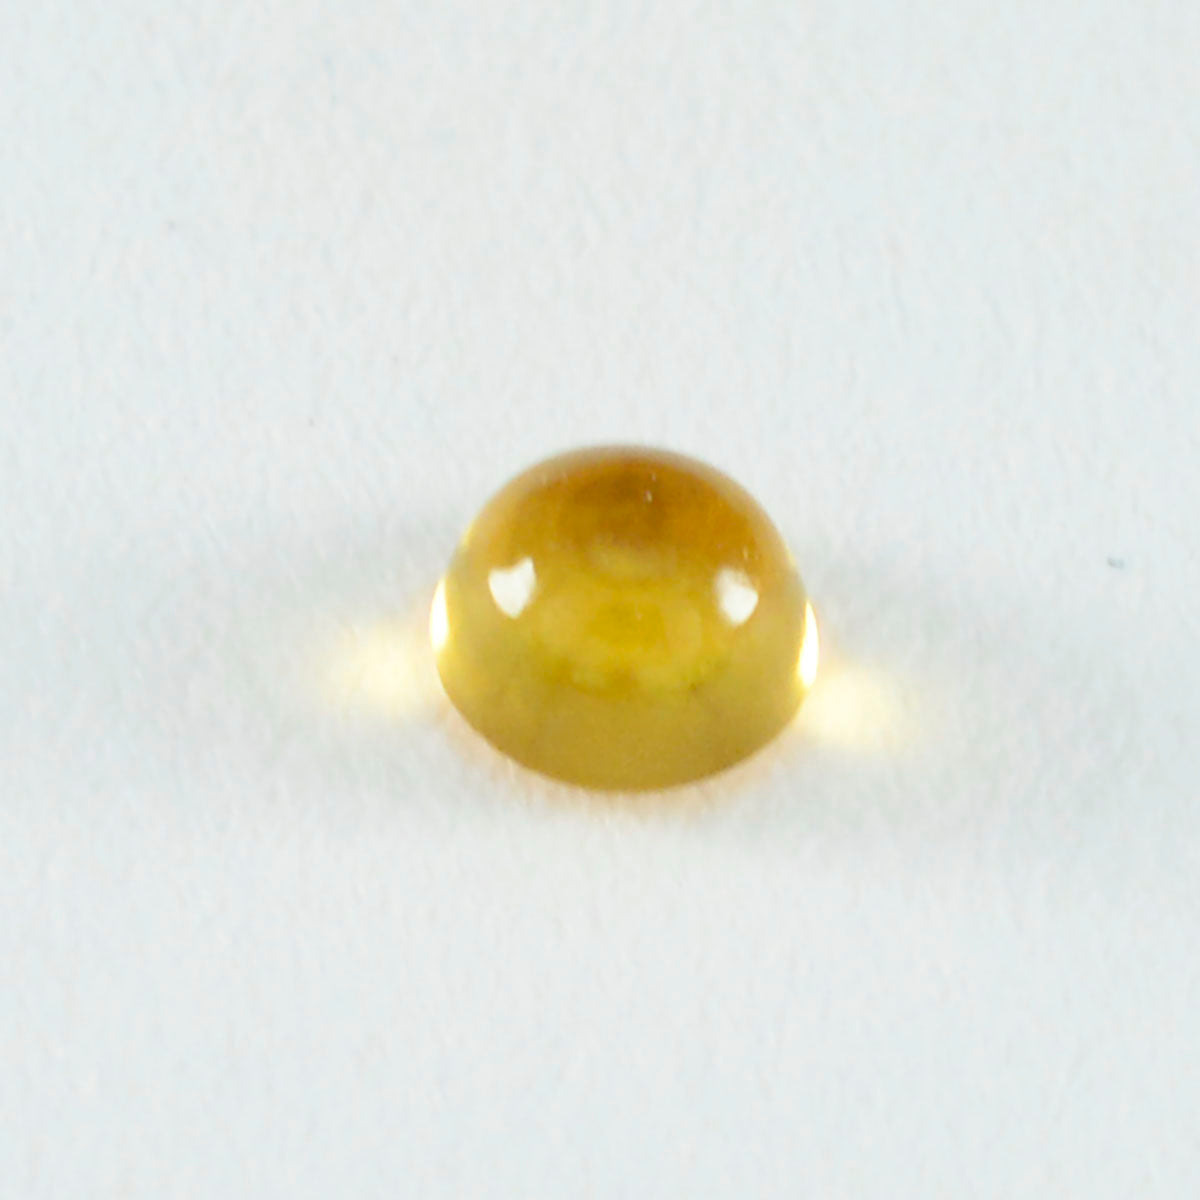 riyogems 1 pezzo di cabochon di citrino giallo 10x10 mm di forma rotonda, pietra sciolta di qualità eccezionale